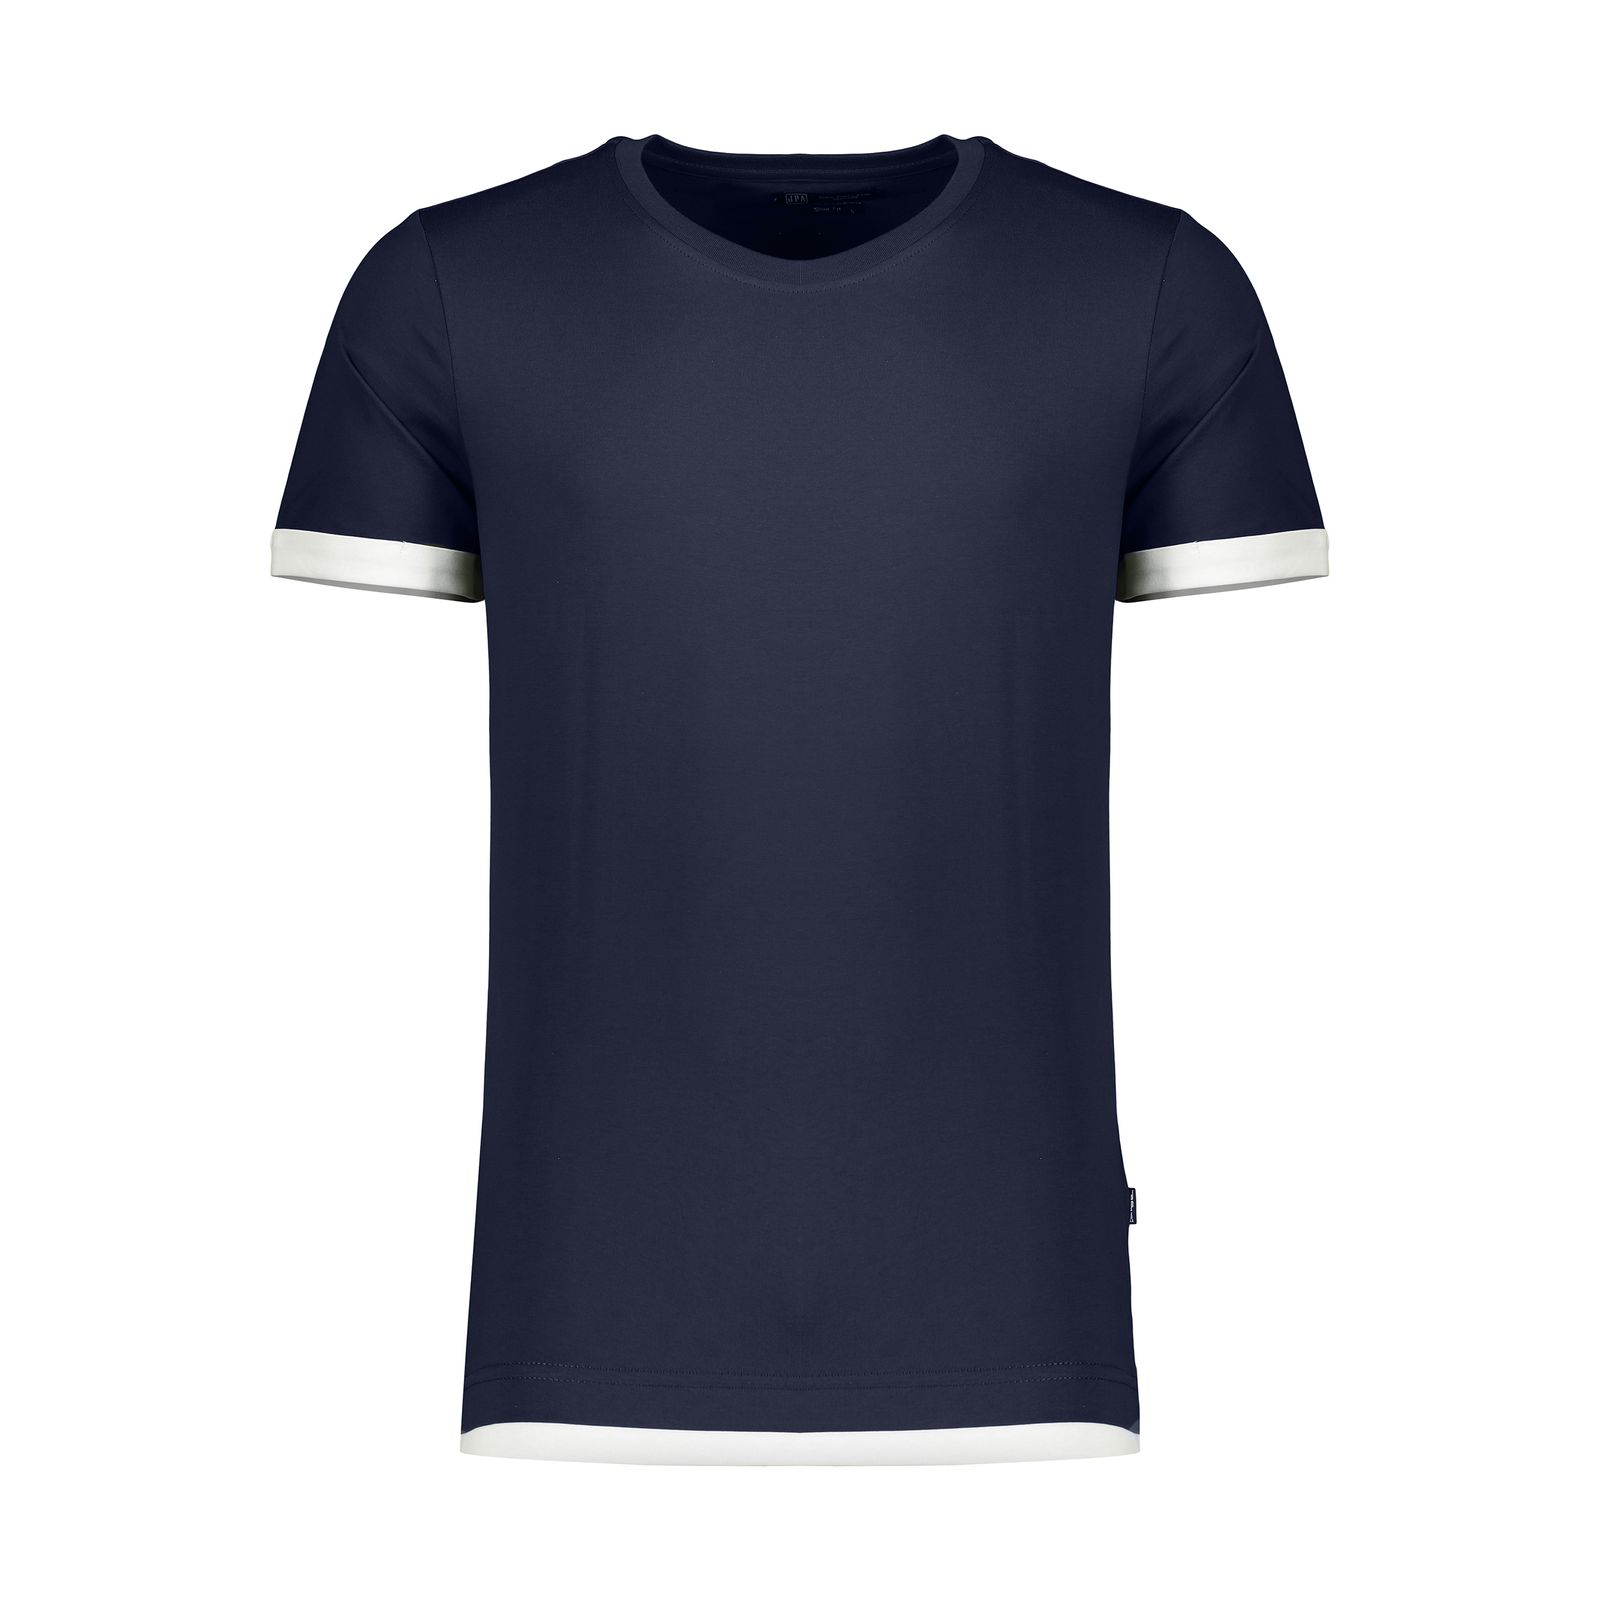 تی شرت مردانه جامه پوش آرا مدل 4011010305-59 -  - 1